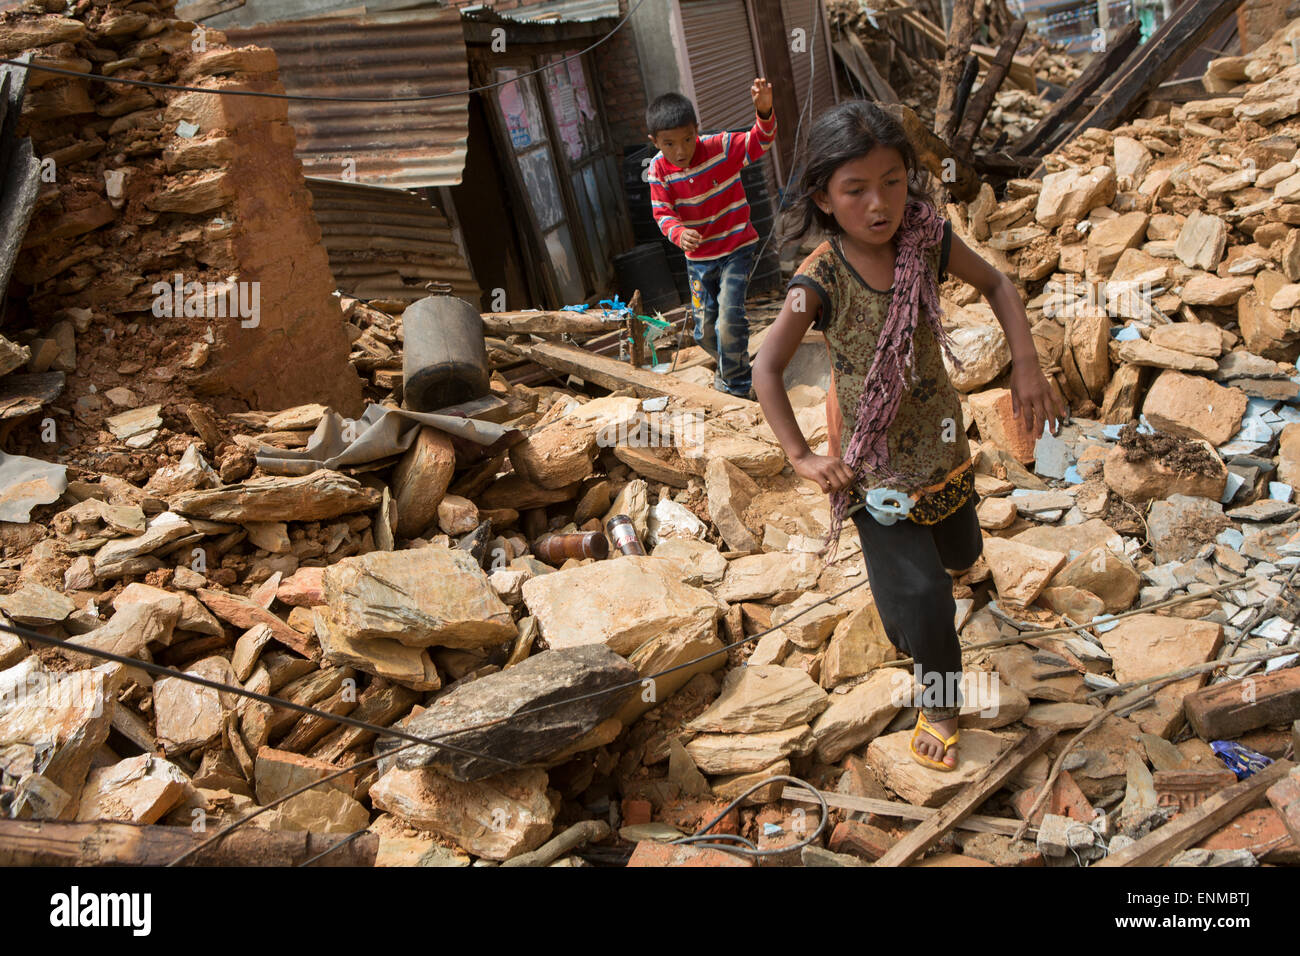 Los niños recorren las calles de la ciudad en el distrito Sindhulpalchowk Chautara, Nepal, tras el terremoto de 2015. Foto de stock